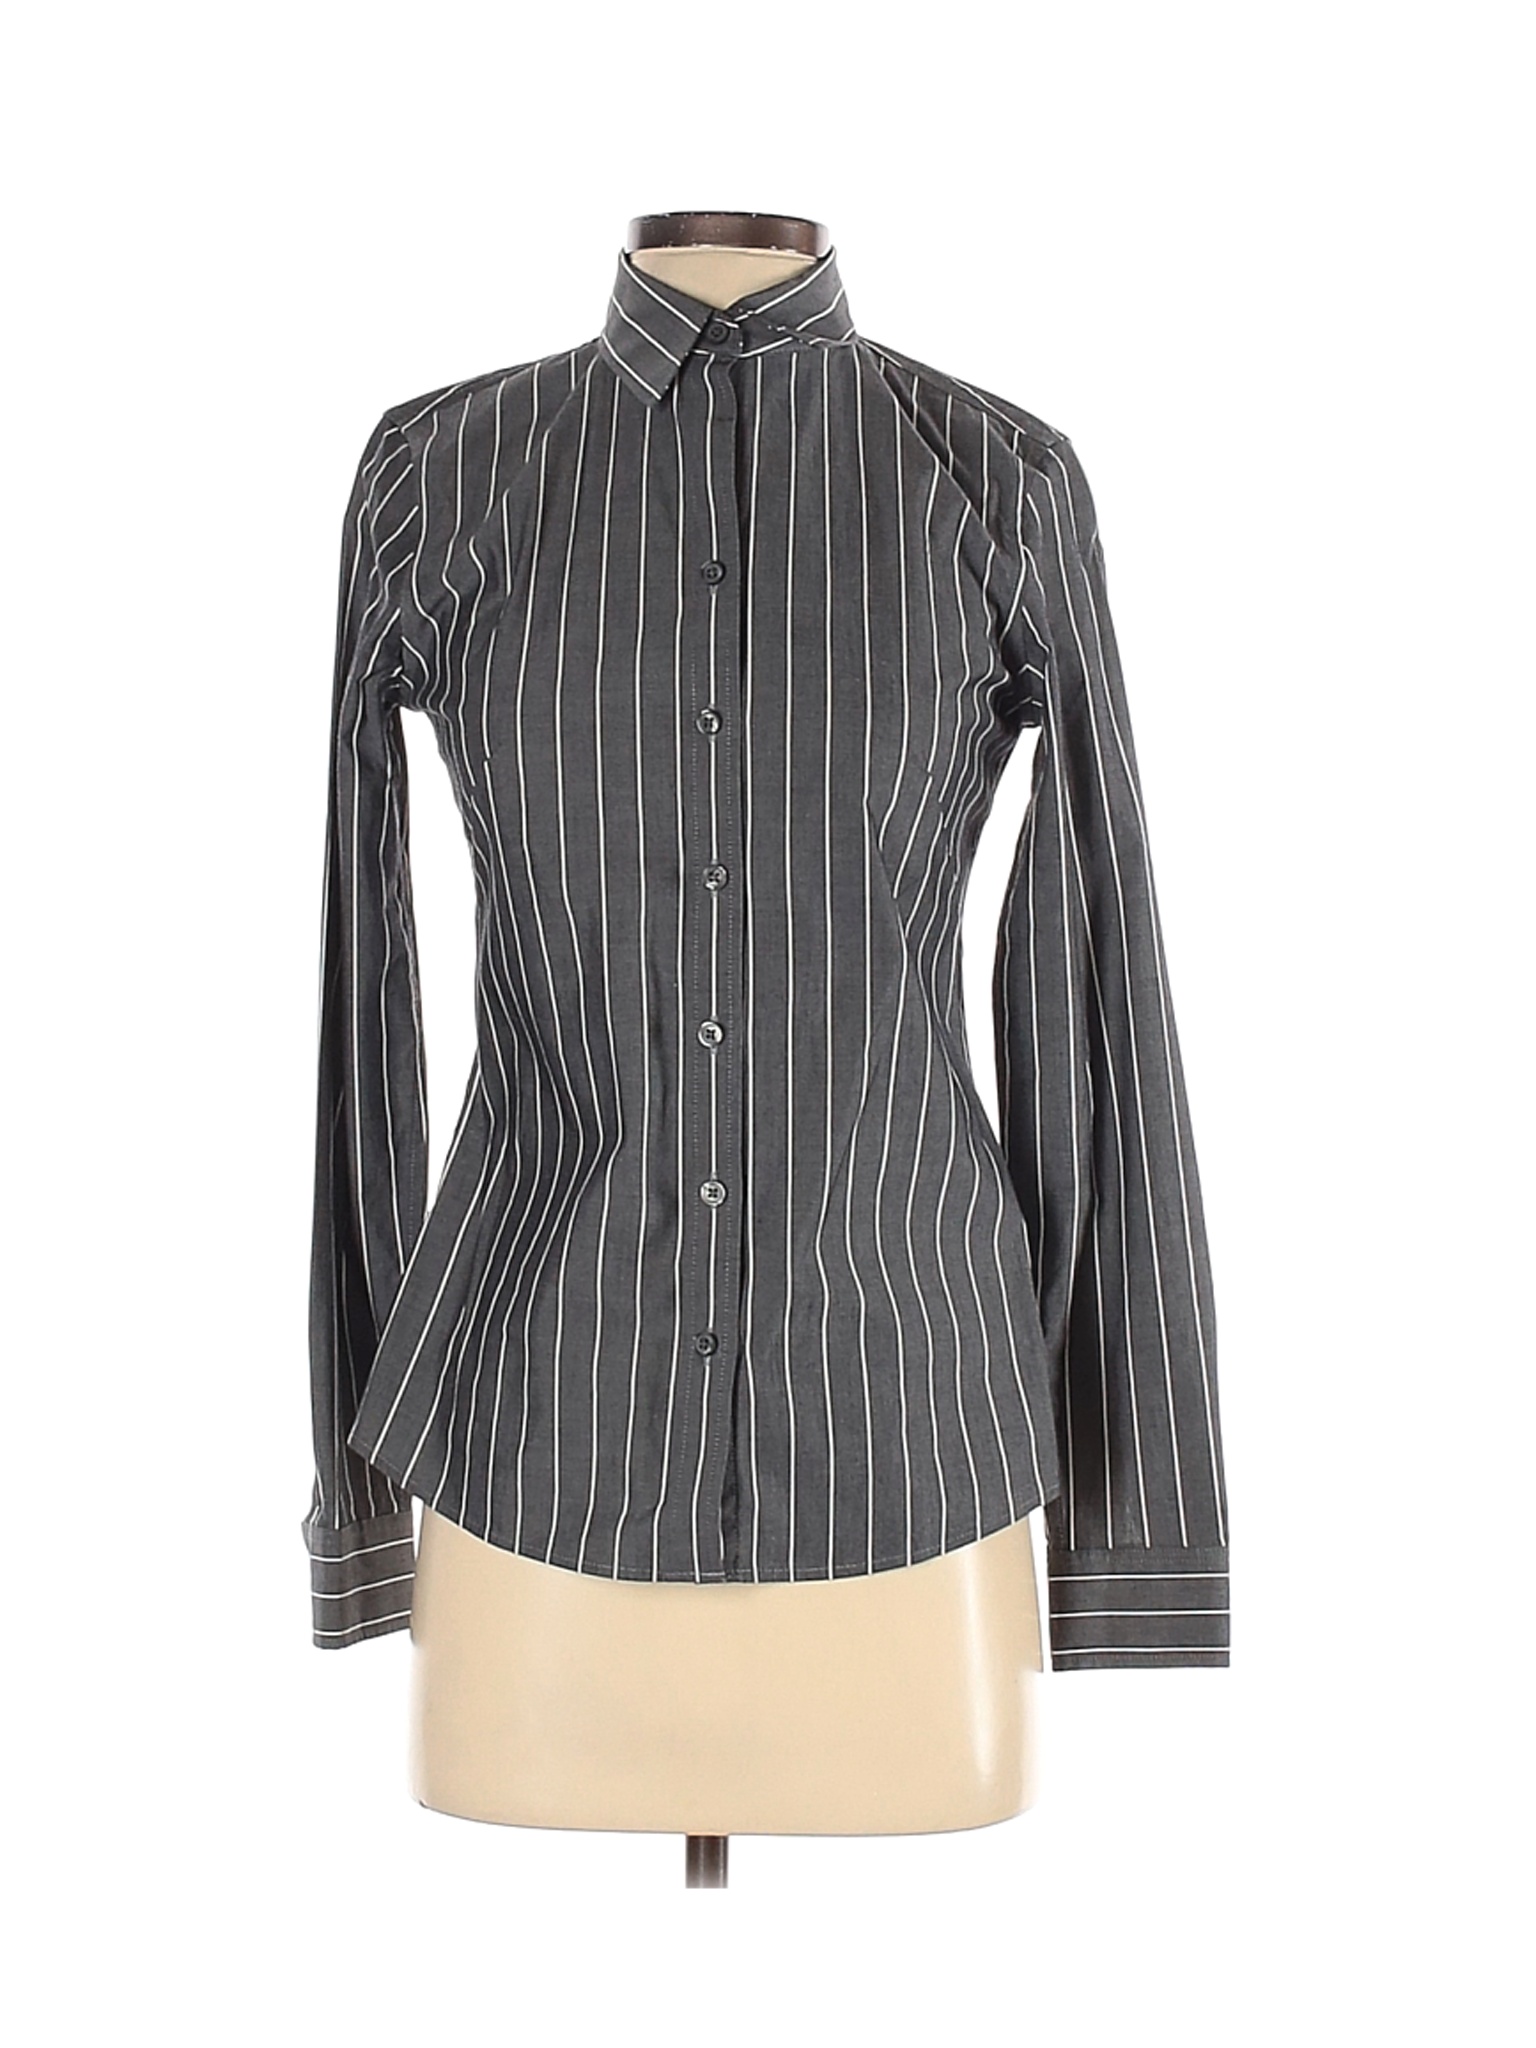 Banana Republic Women Gray Long Sleeve Button-Down Shirt 0 | eBay